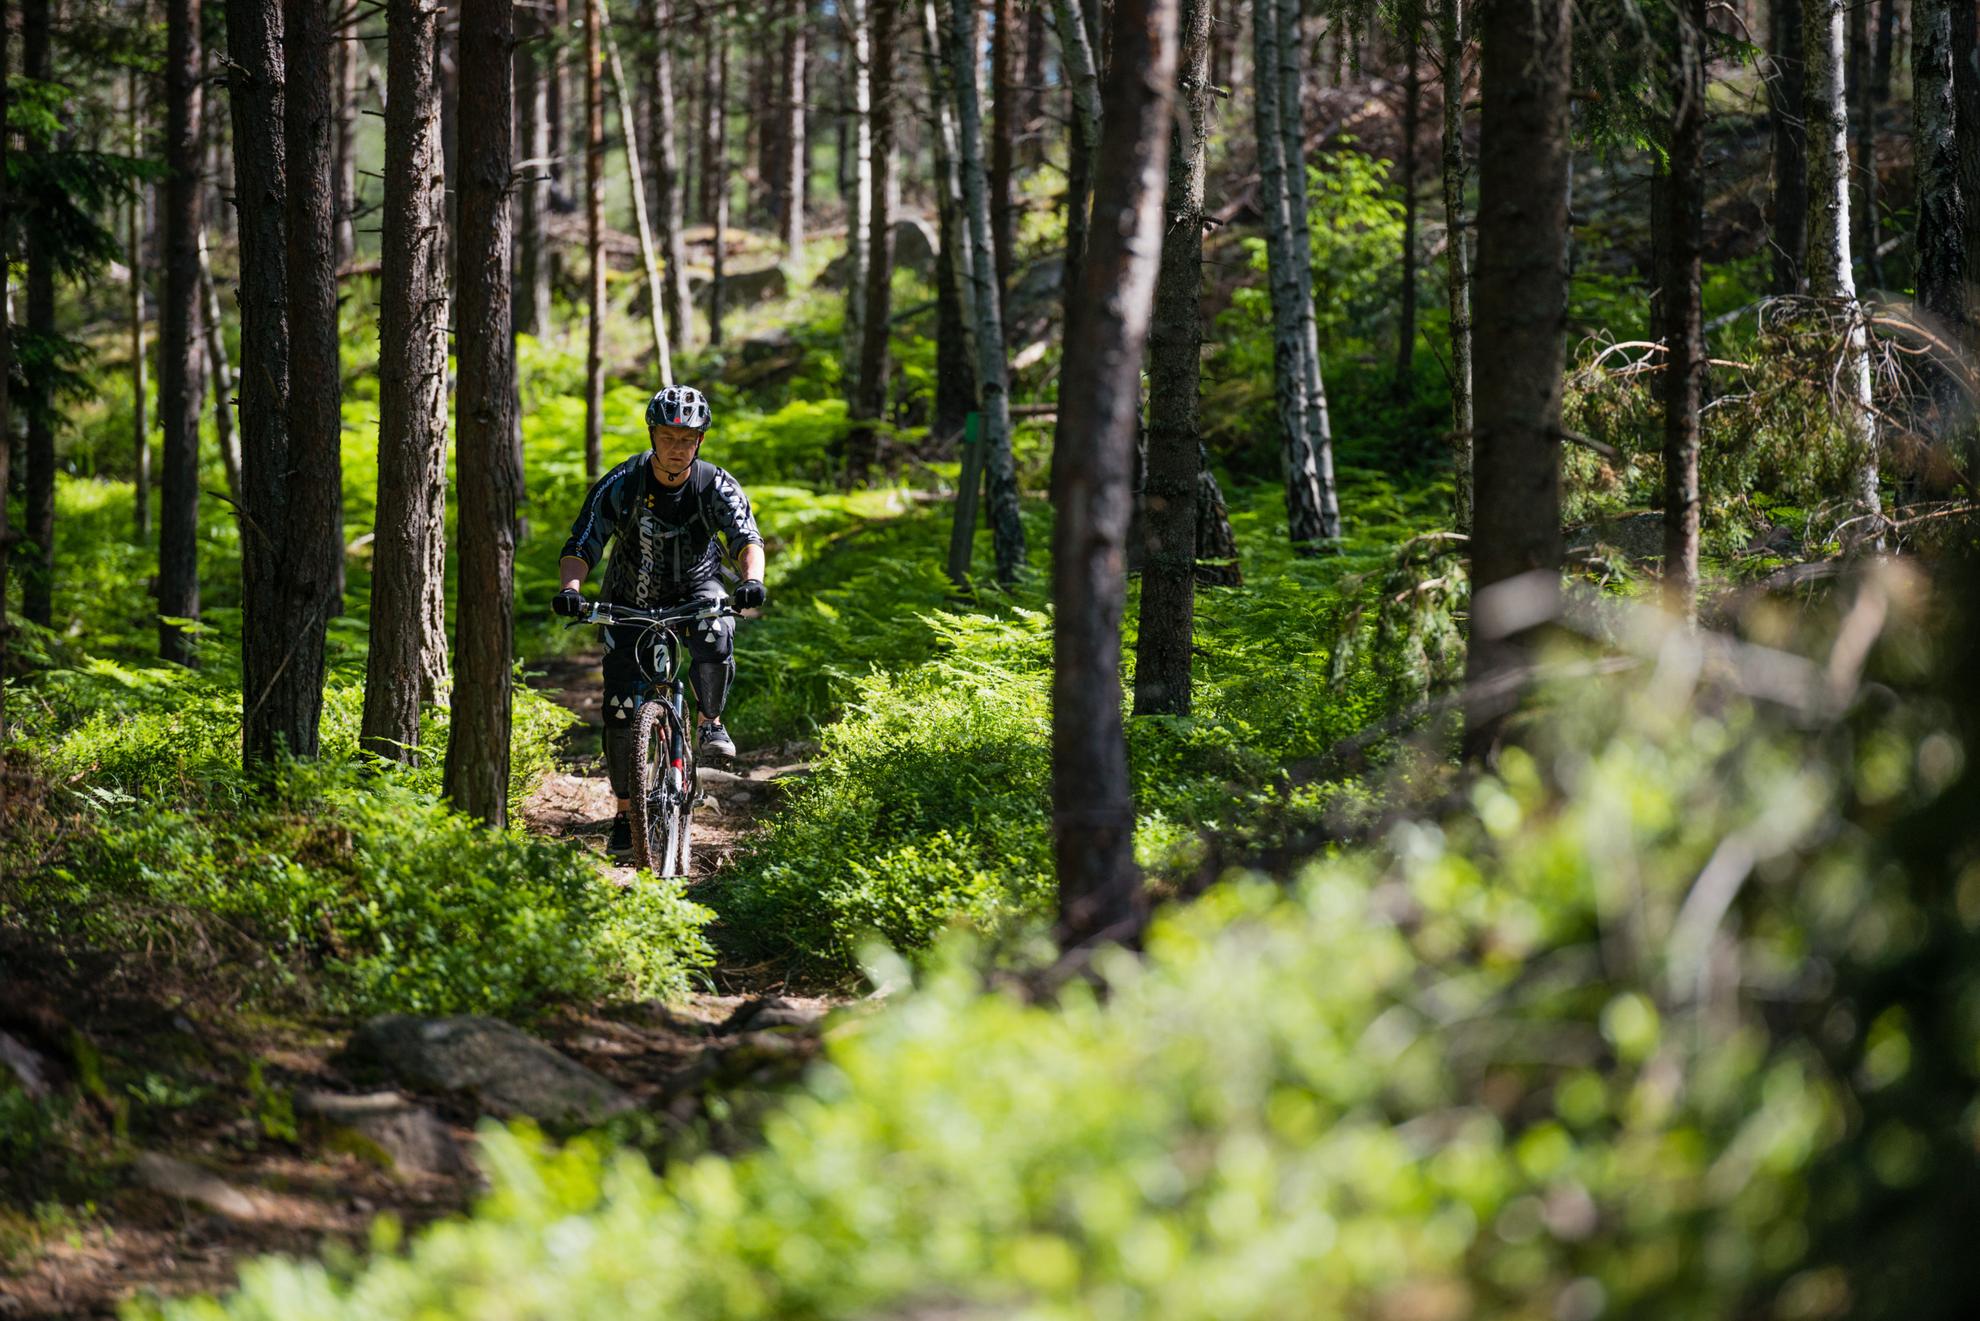 A man wearing a helmet rides a mountain bike through a lush forest.